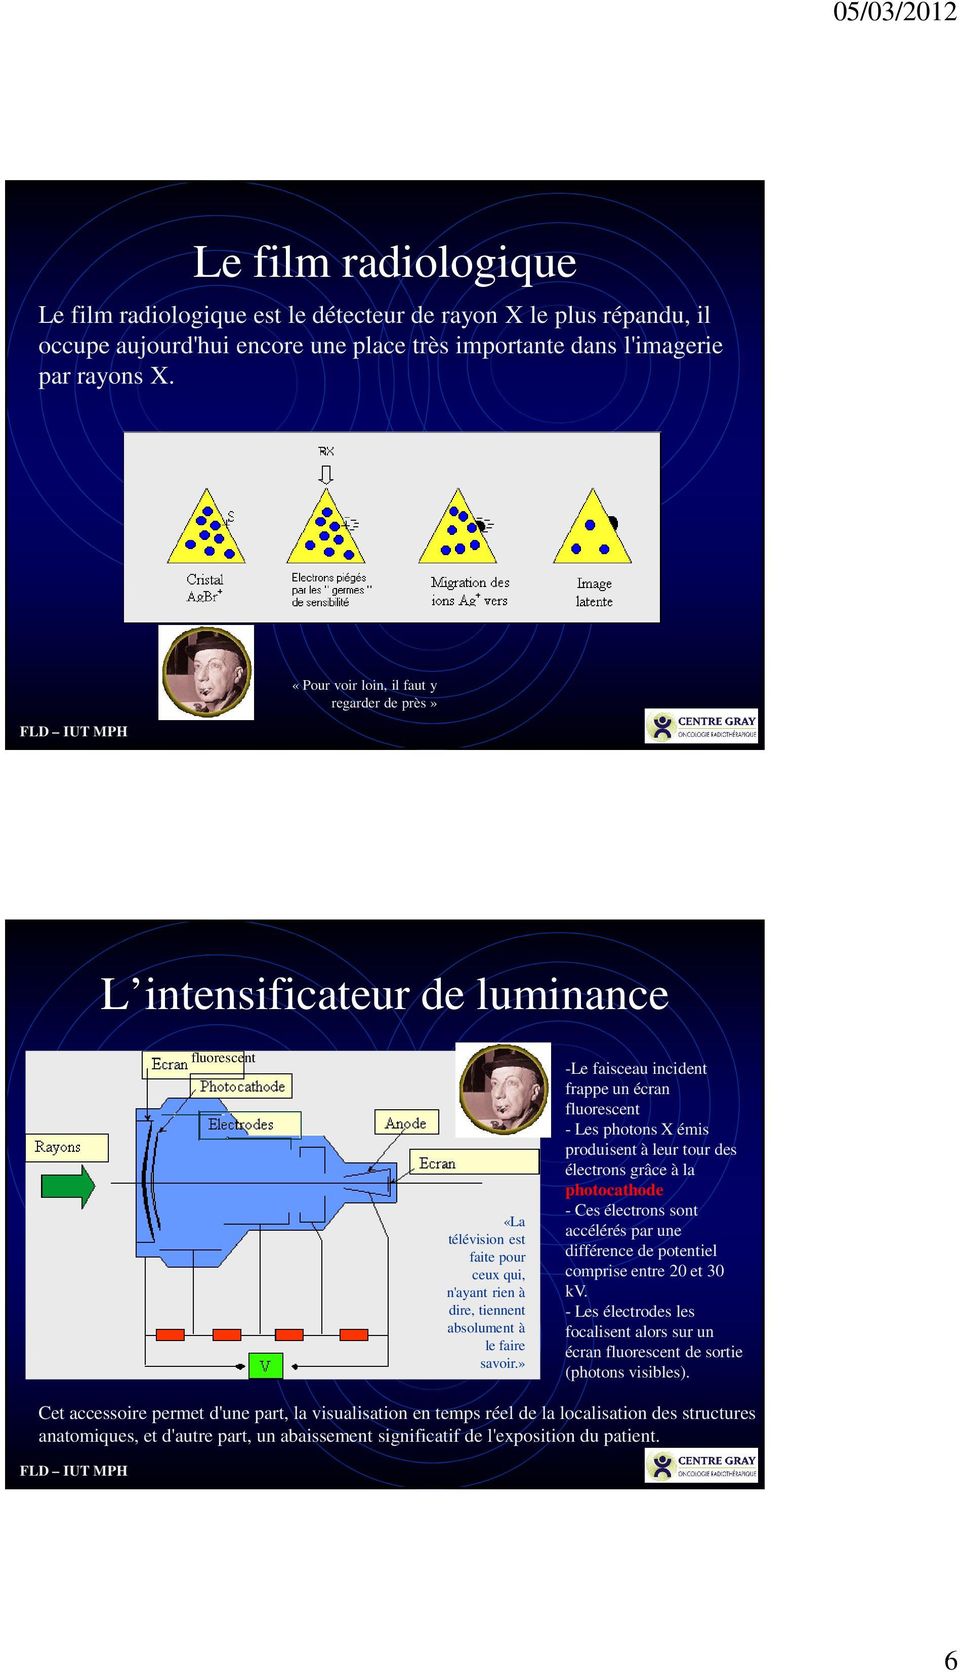 » -Le faisceau incident frappe un écran fluorescent - Les photons X émis produisent à leur tour des électrons grâce à la photocathode - Ces électrons sont accélérés par une différence de potentiel